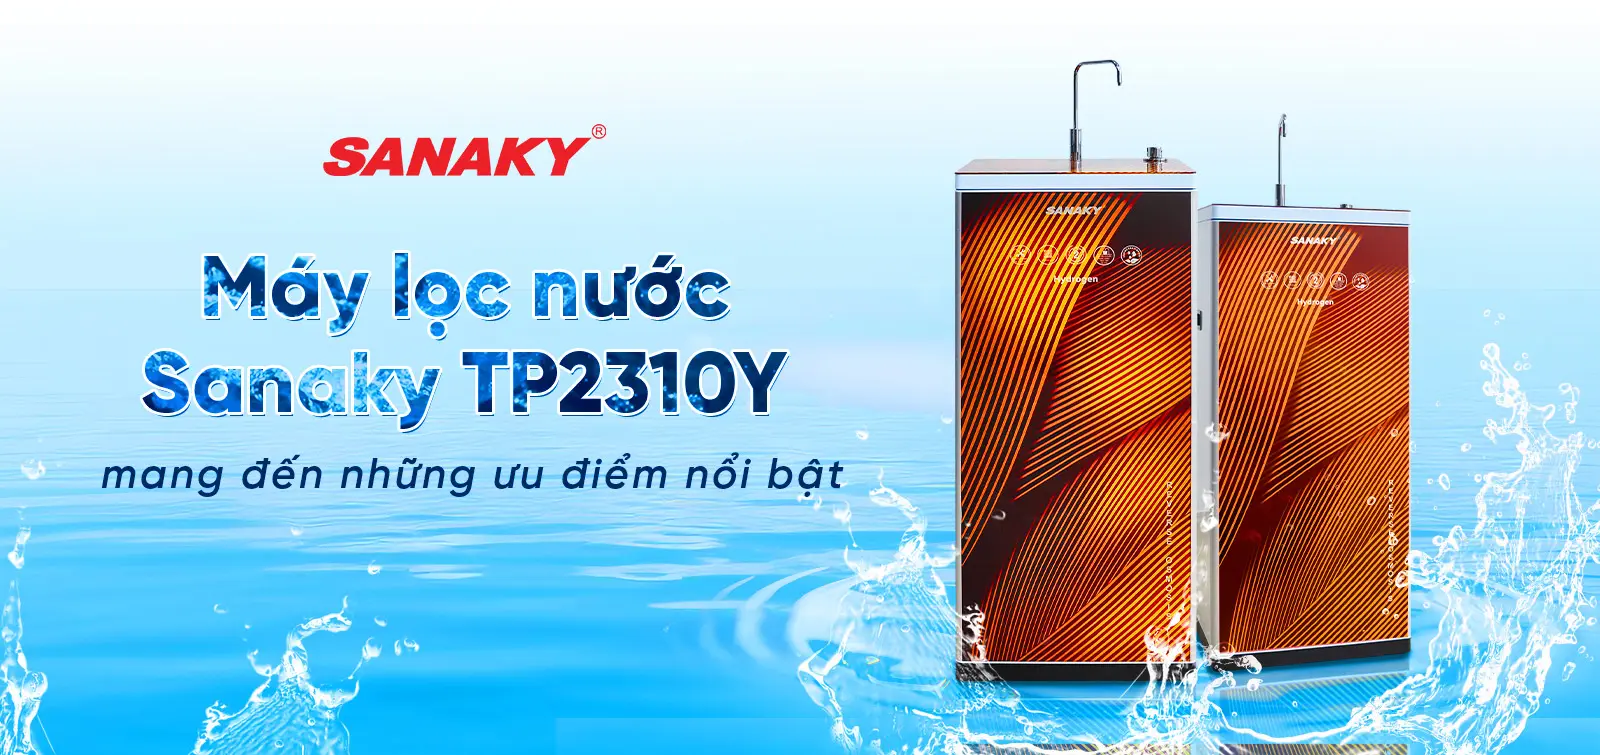 Máy lọc nước Sanaky TP2310Y mang đến những ưu điểm nổi bật